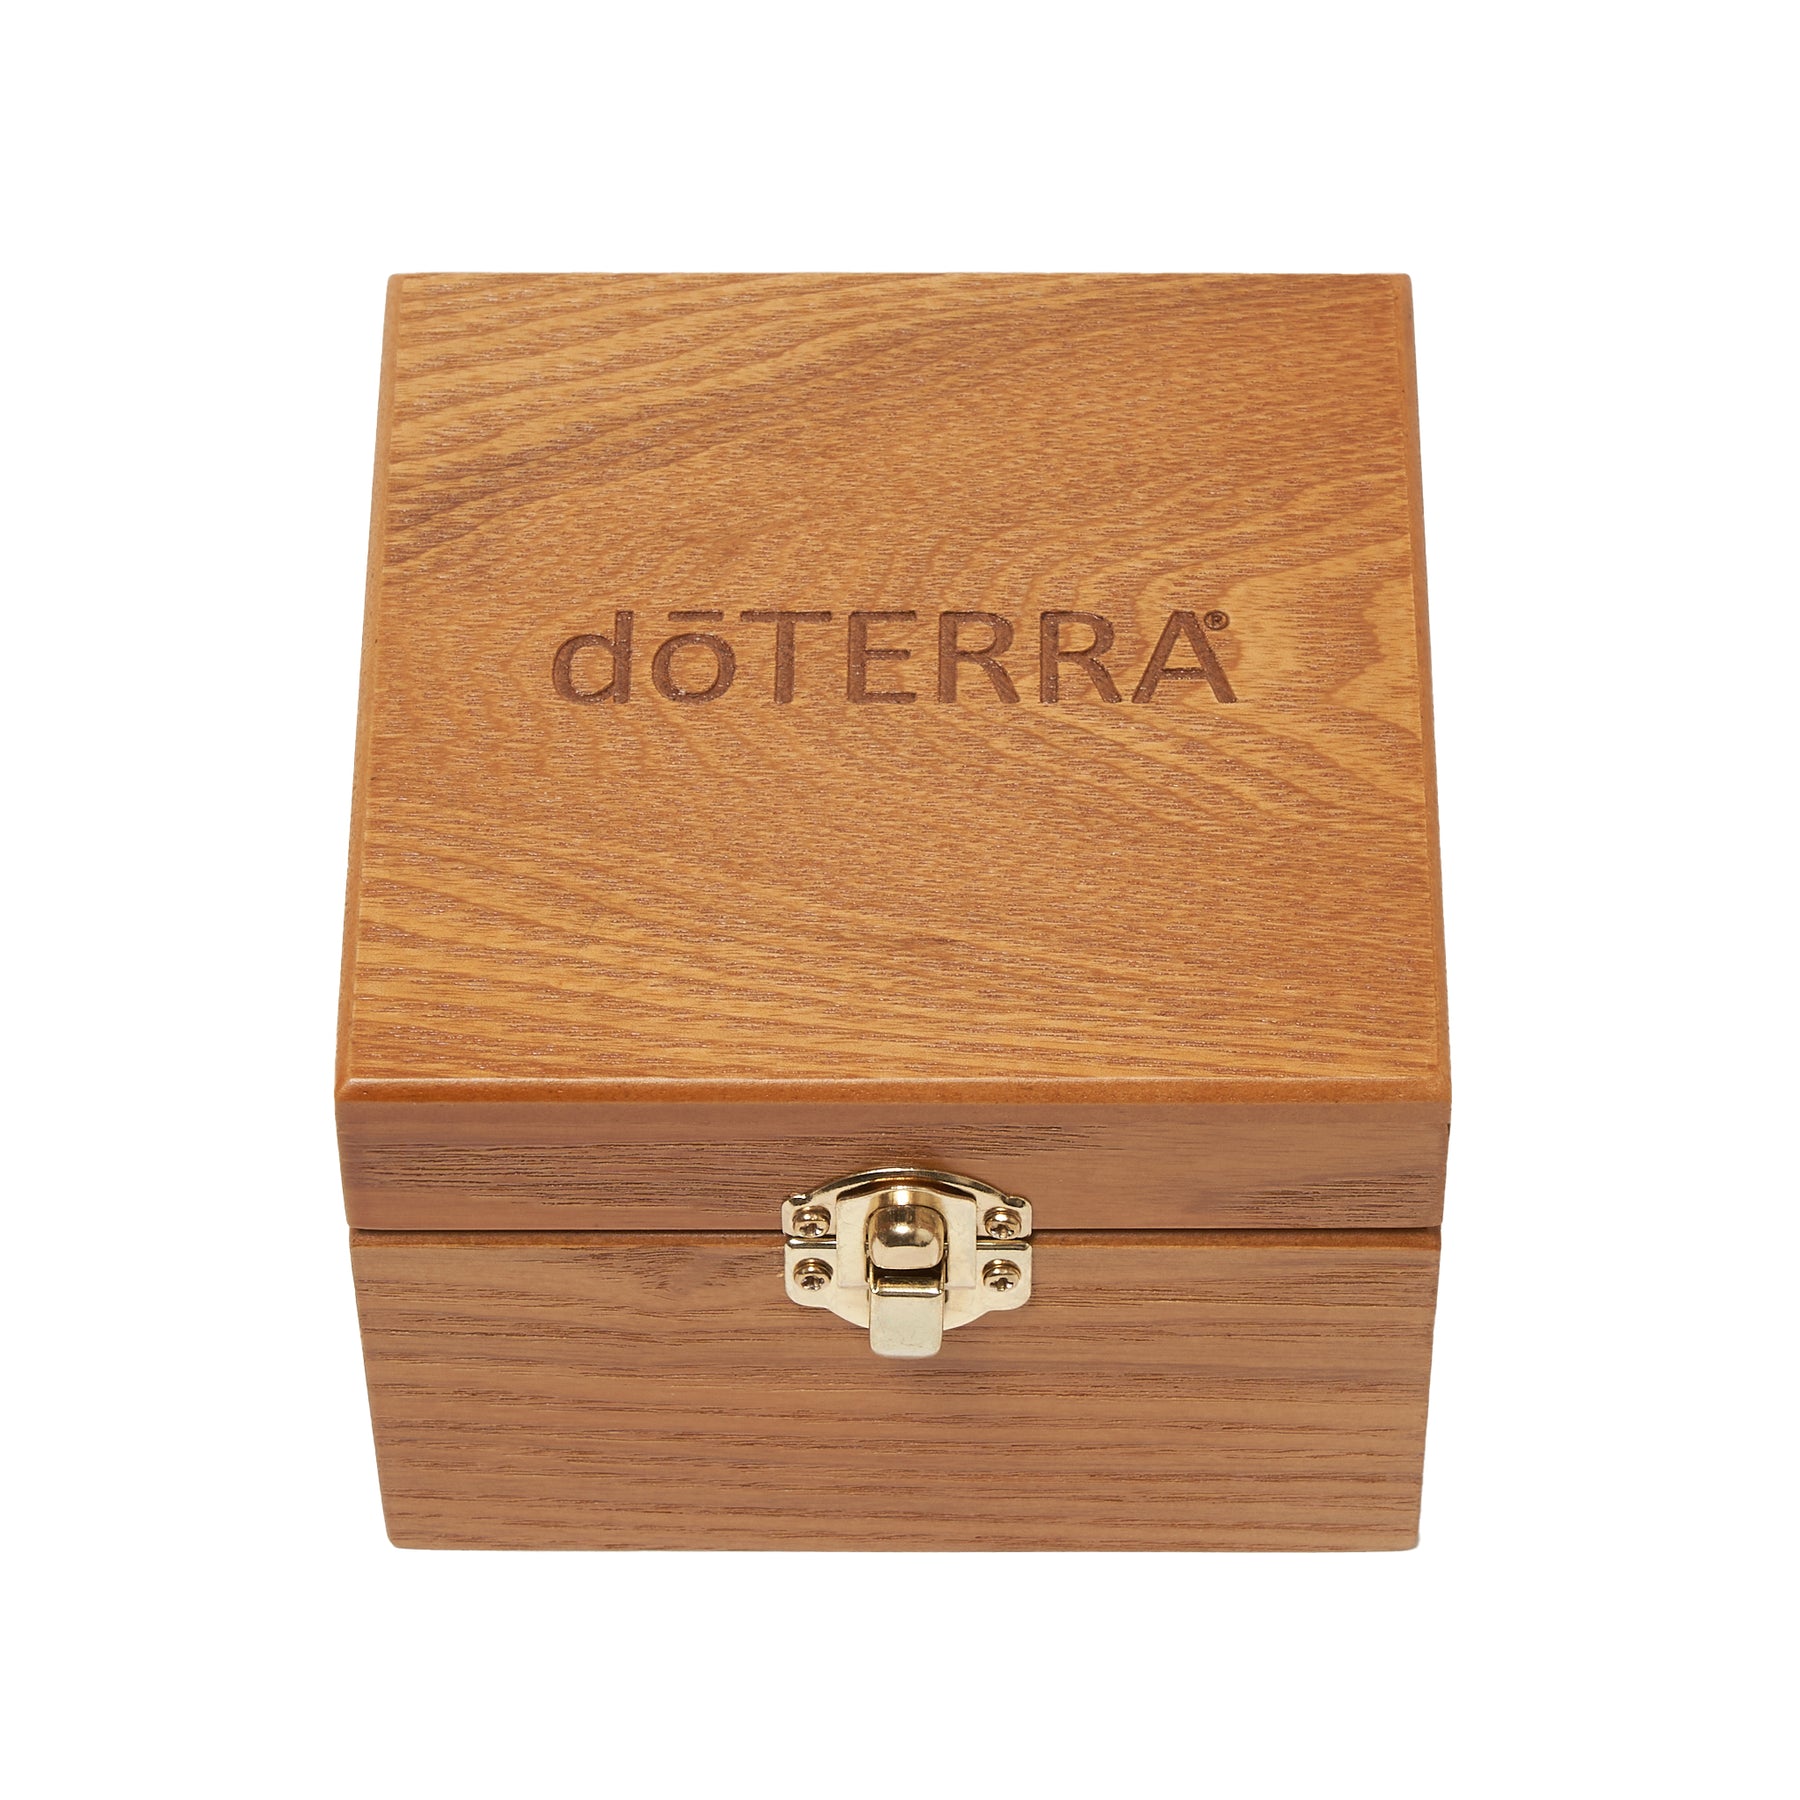 ドテラ ウッドボックス 木箱 - エッセンシャルオイル